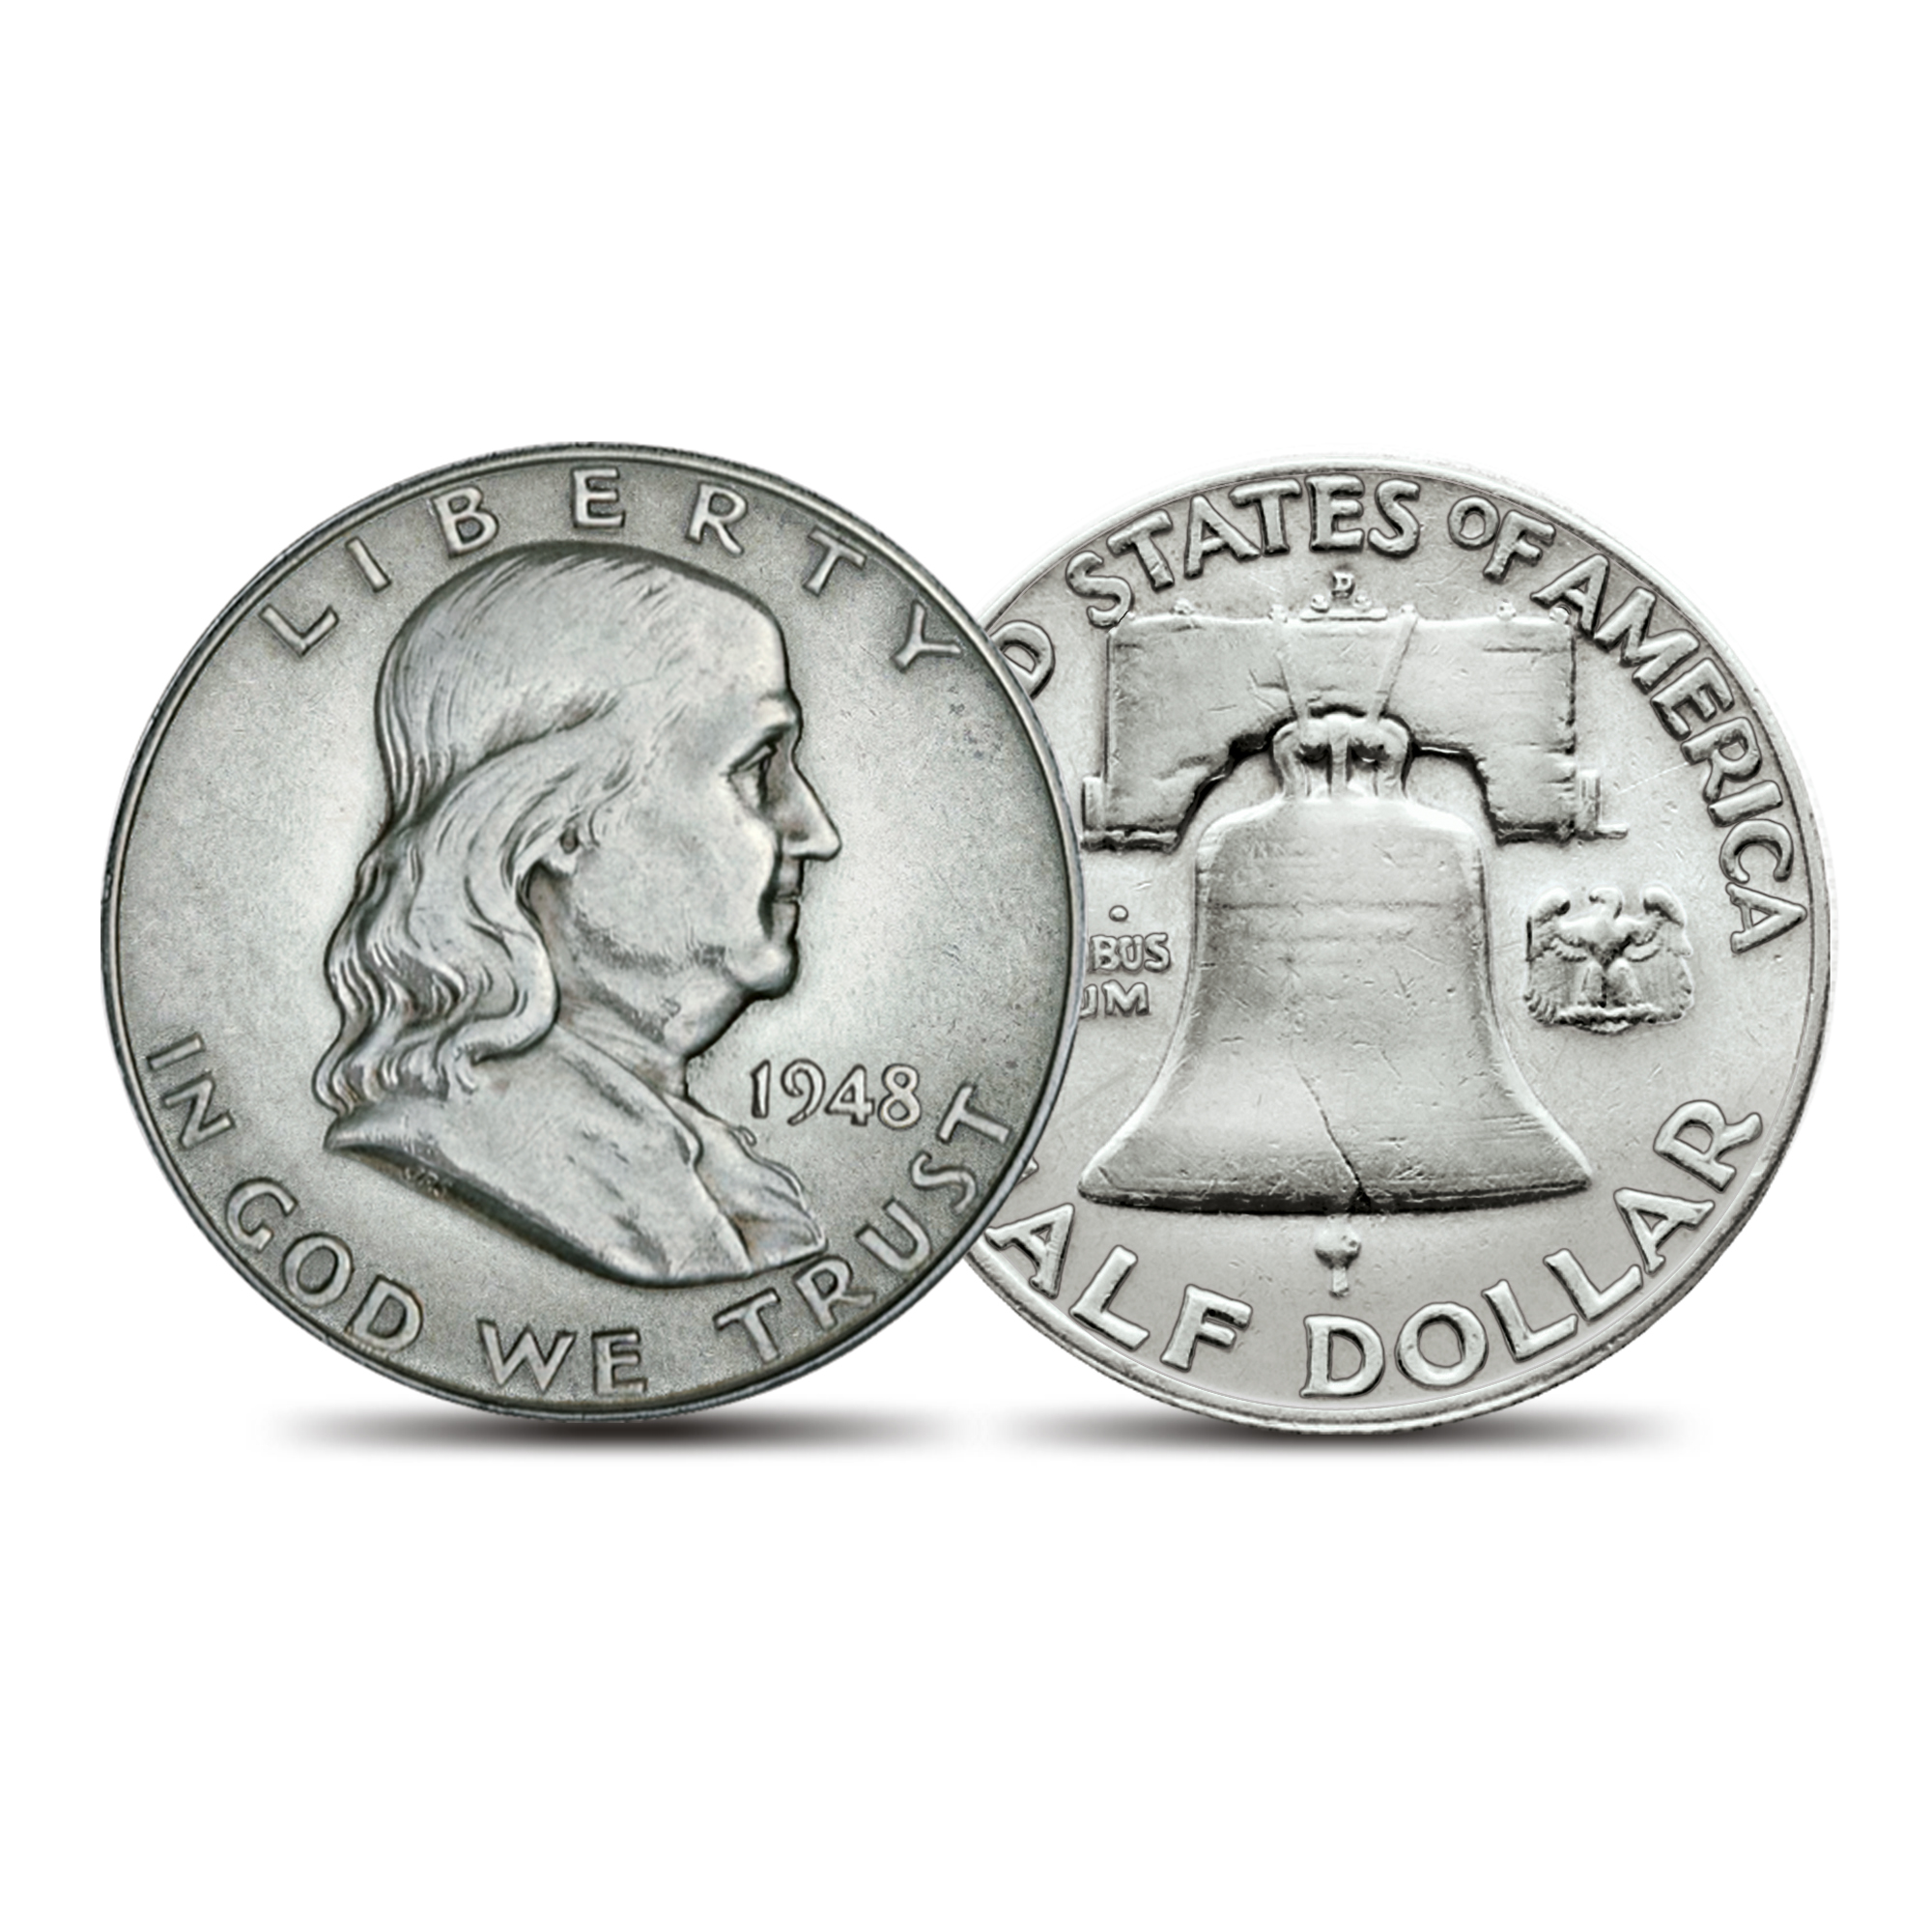 1962 Silver Proof Ben Franklin Half Dollar Flashy Gem Example    DUTCH 